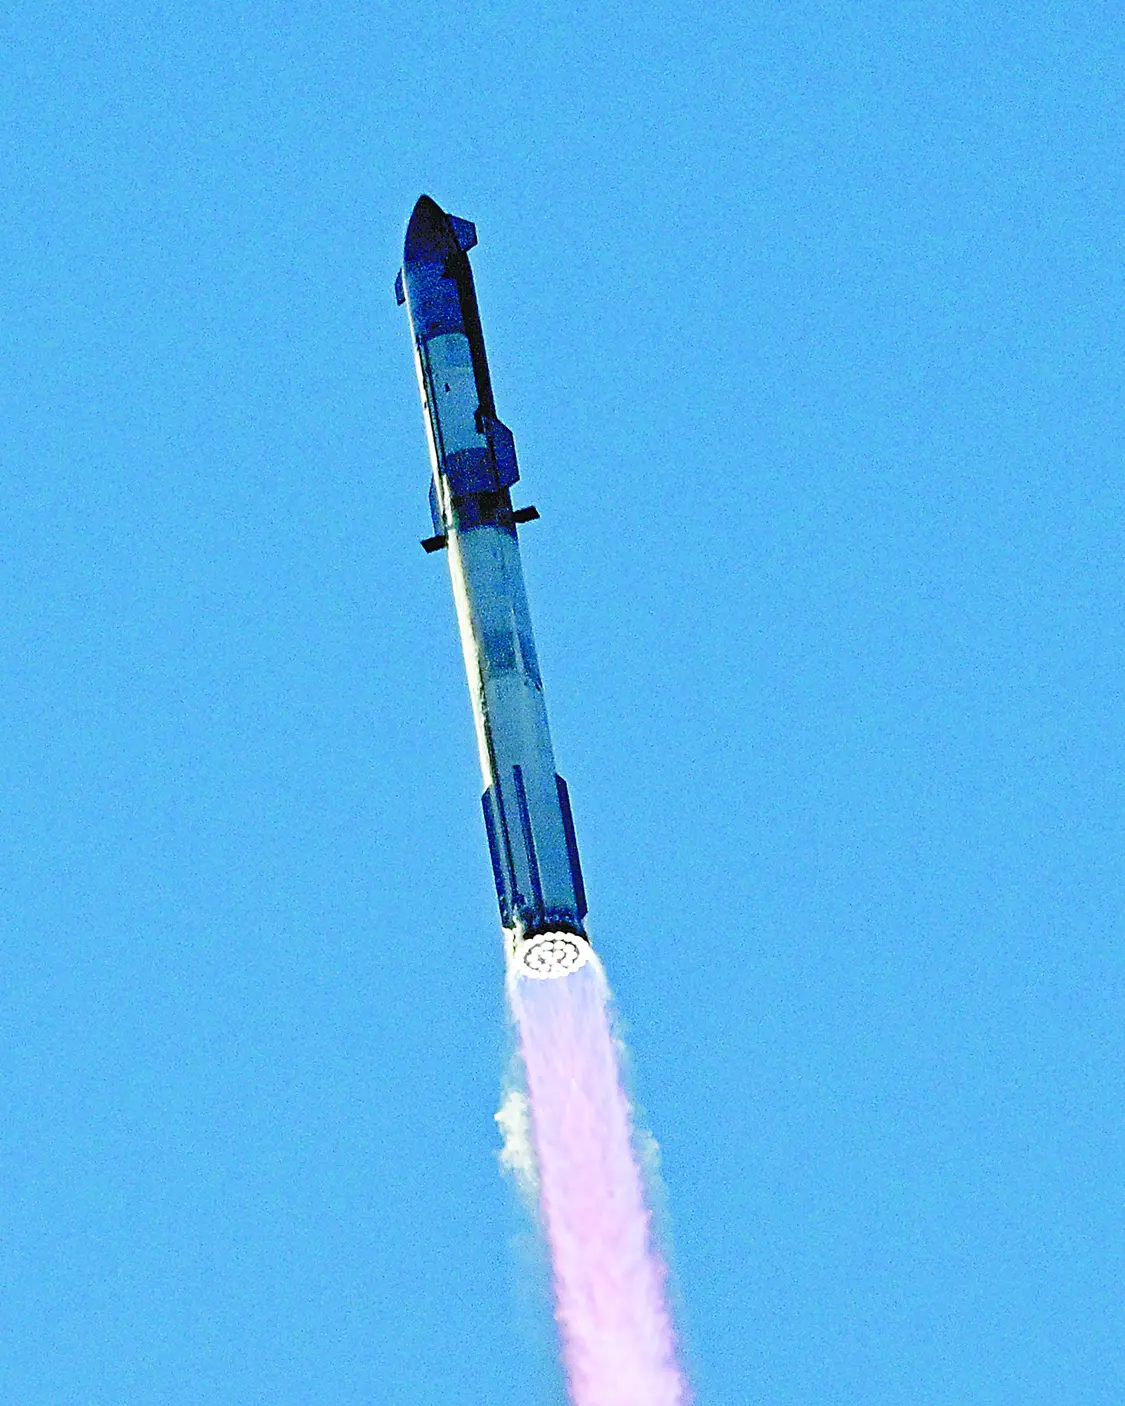 火箭第一级33台发动机起飞阶段均正常工作。